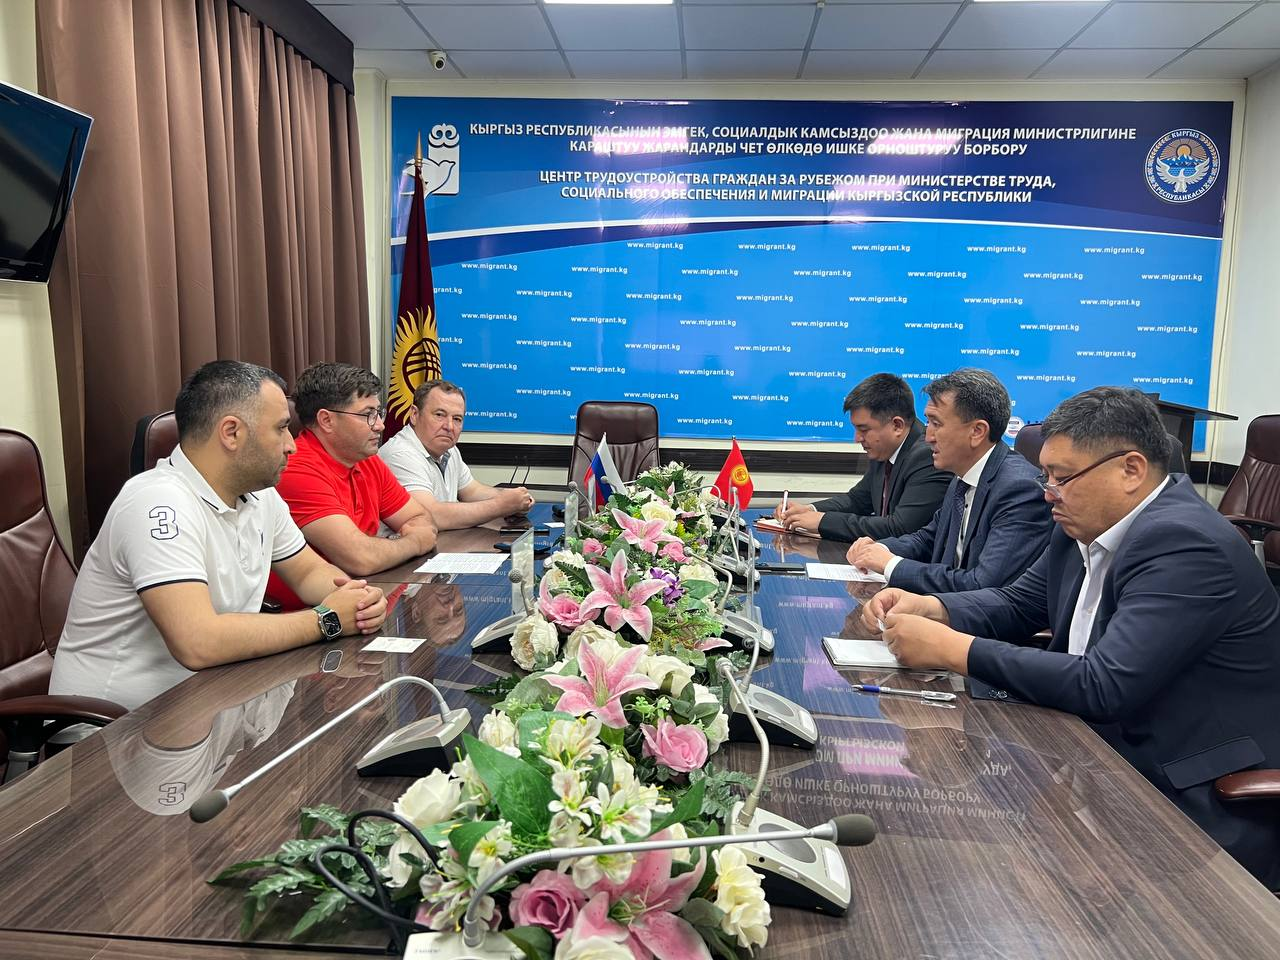 Центр трудоустройства граждан за рубежом при МТСОМ Кыргызской Республики и  «ТАГРАС» Холдинг подписали Соглашение о сотрудничестве